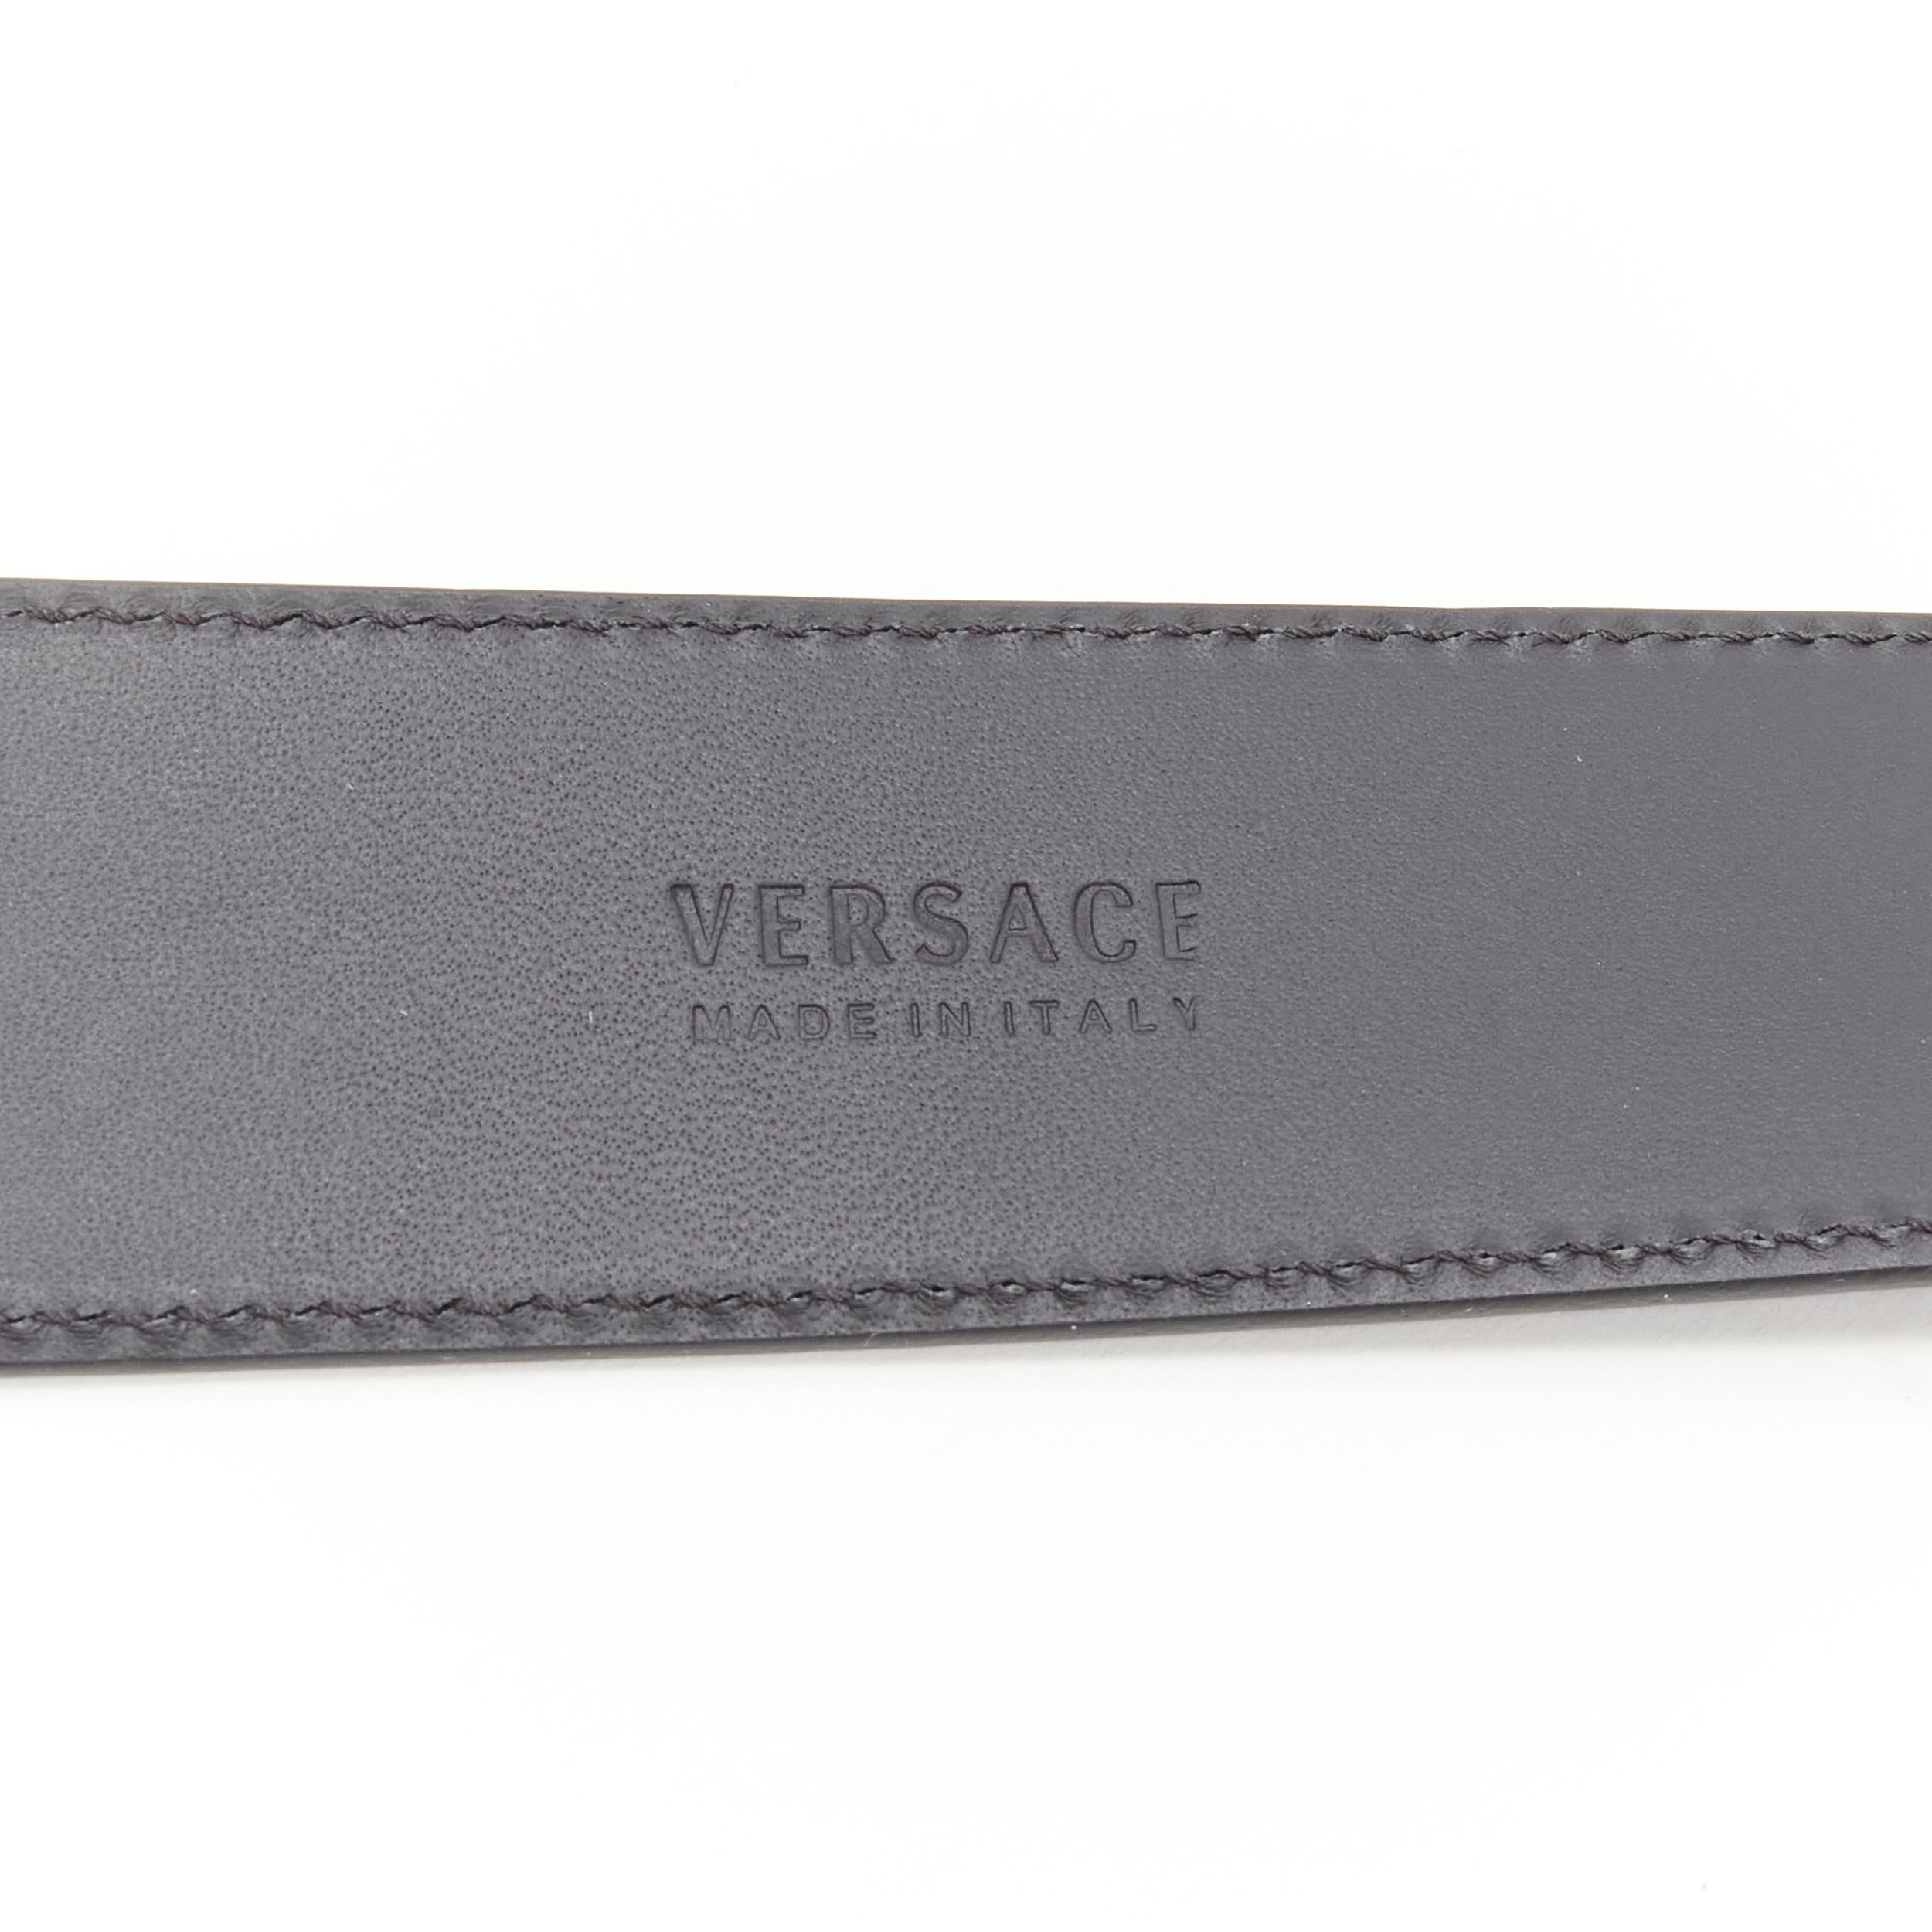 new VERSACE La Medusa ruthenium silver buckle black leather belt 110cm 42-46